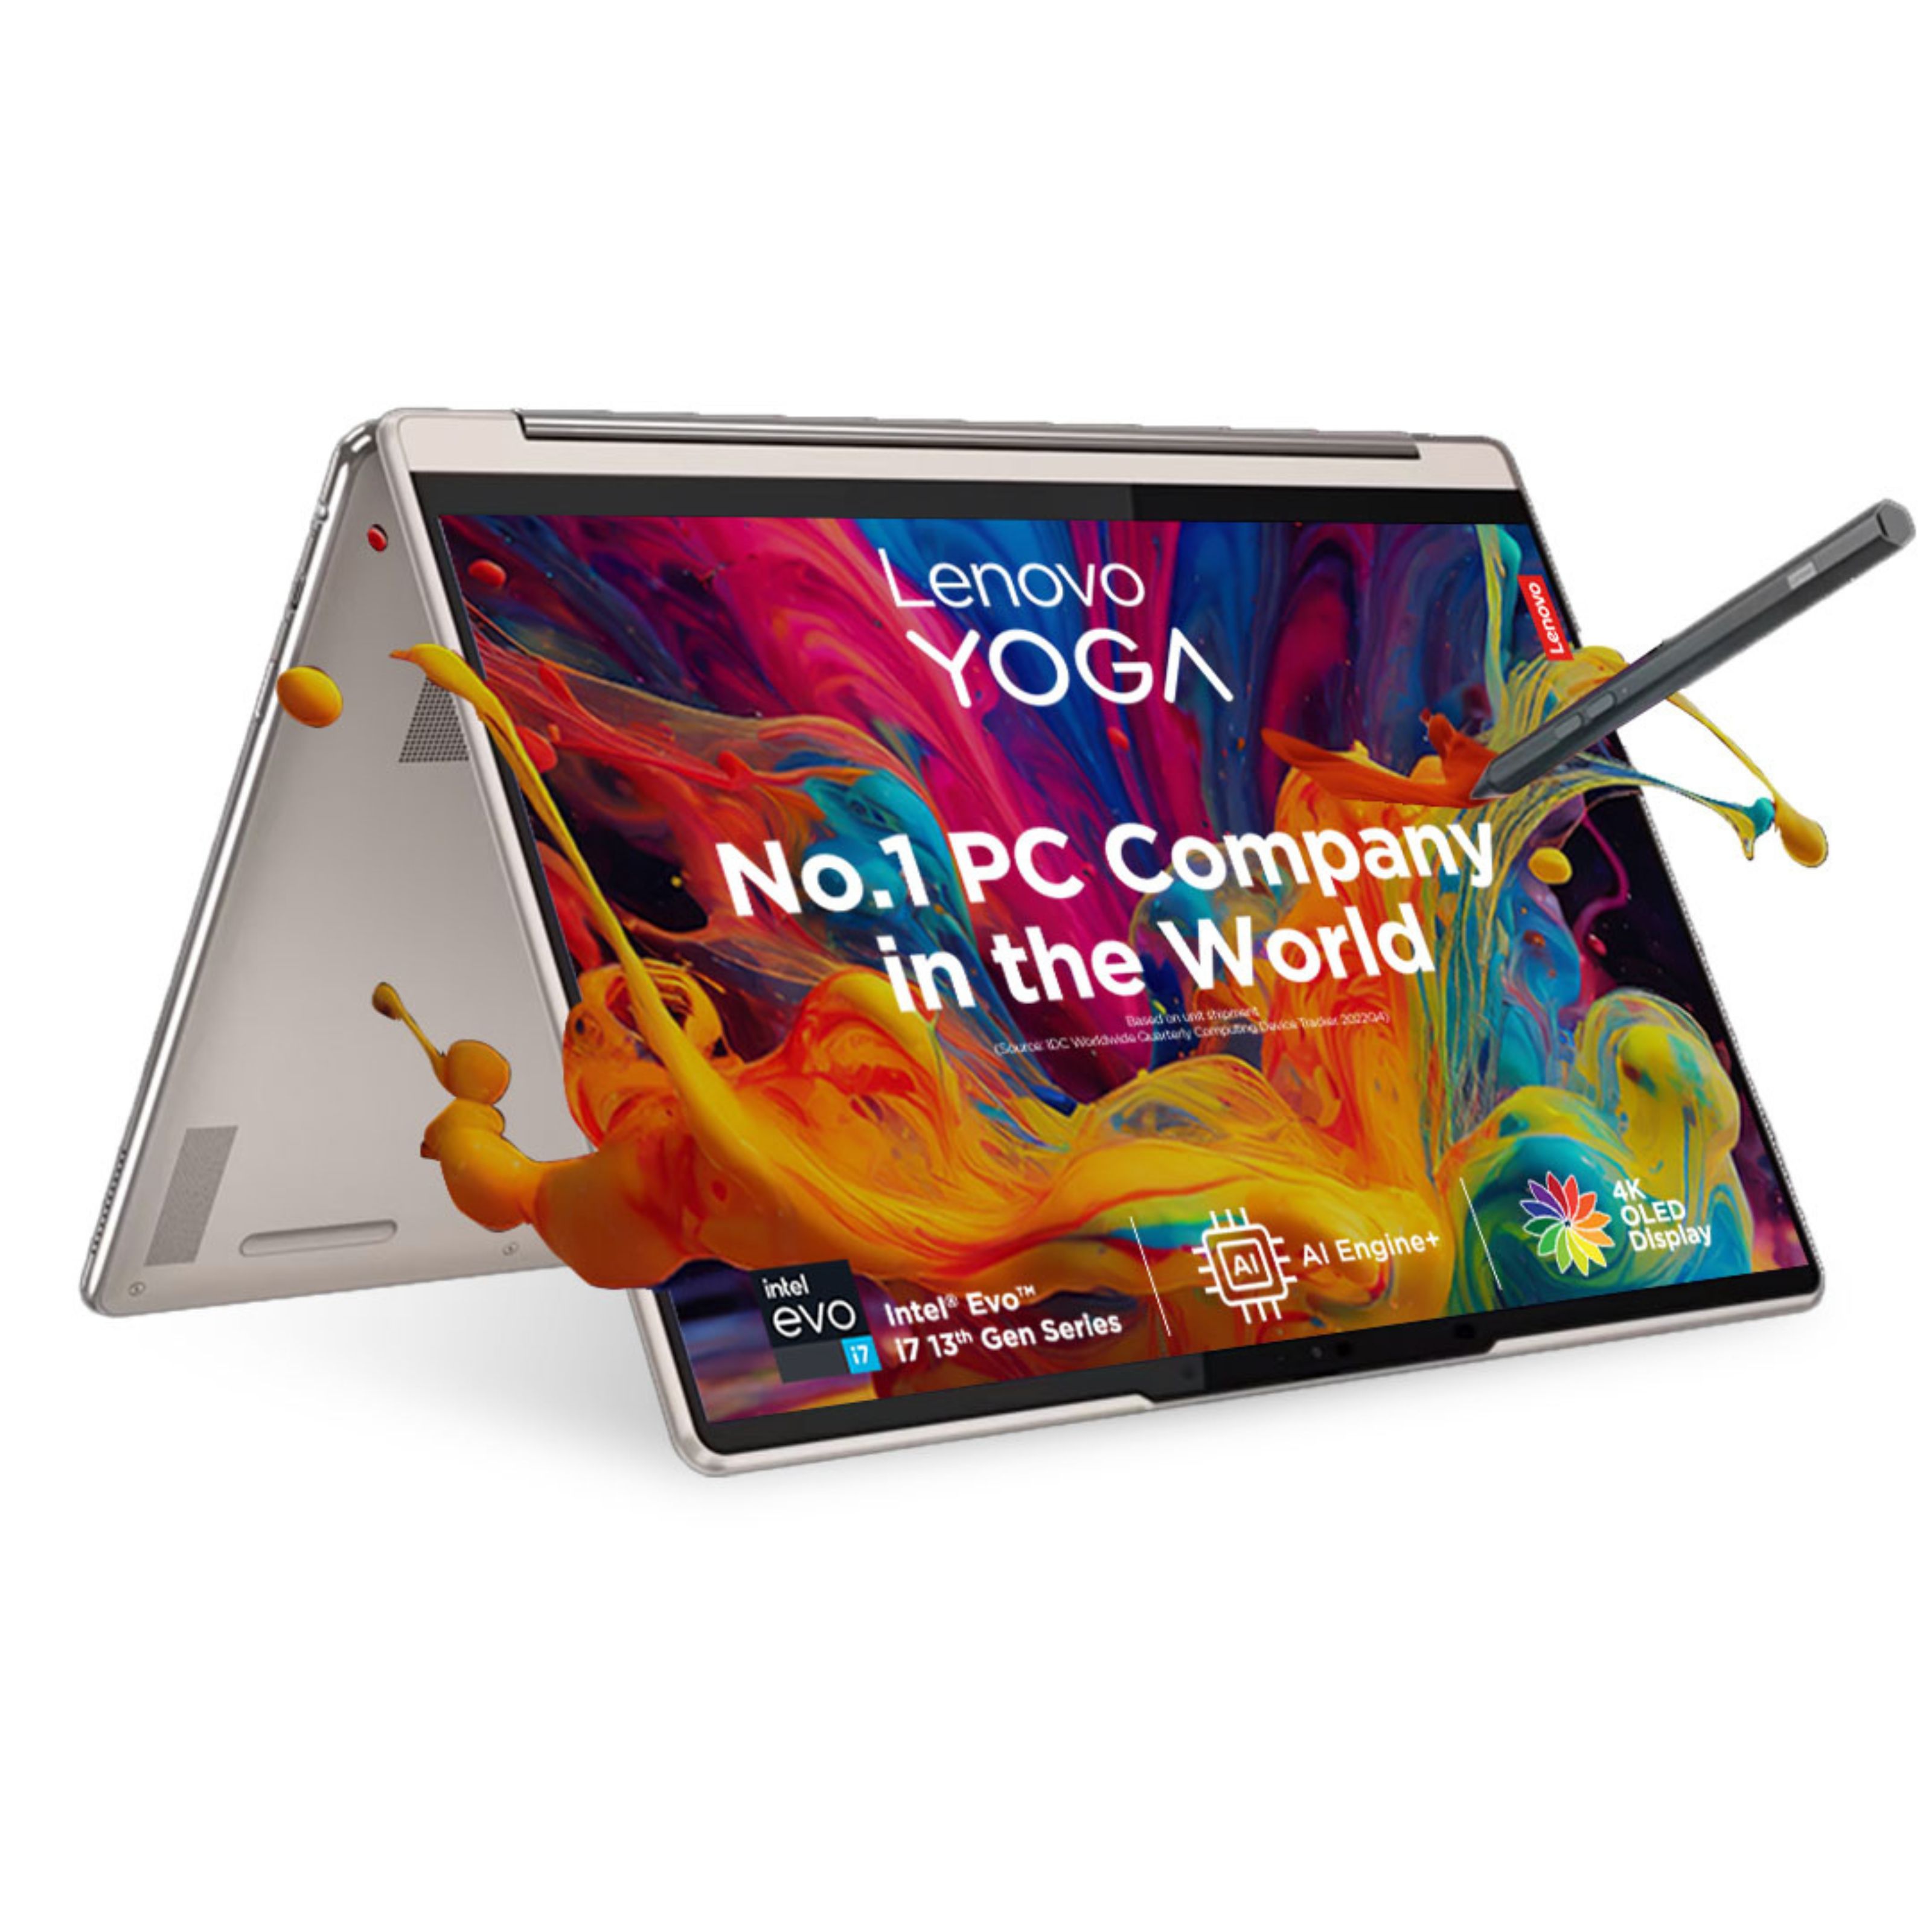 Yoga 9i 13th Gen, 35.56cms - Intel i7 (Oatmeal)